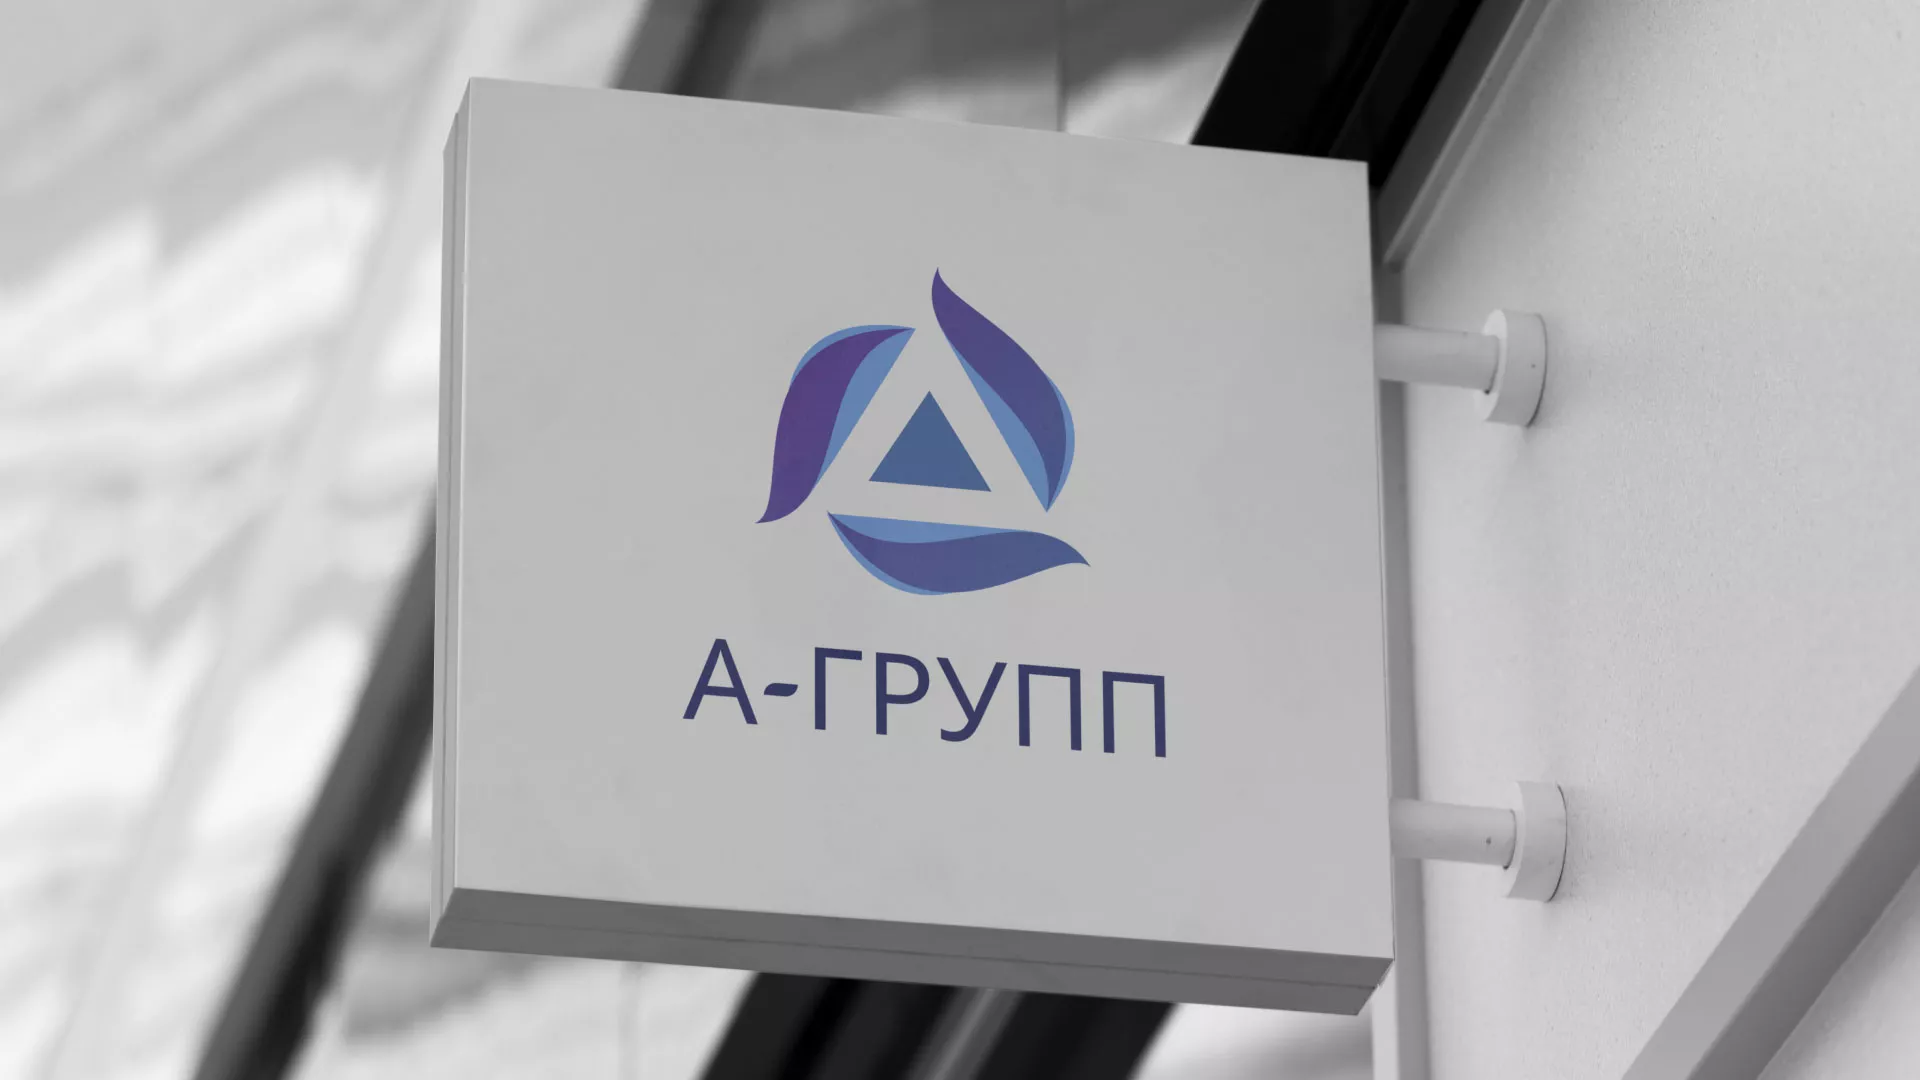 Создание логотипа компании «А-ГРУПП» в Жуковке